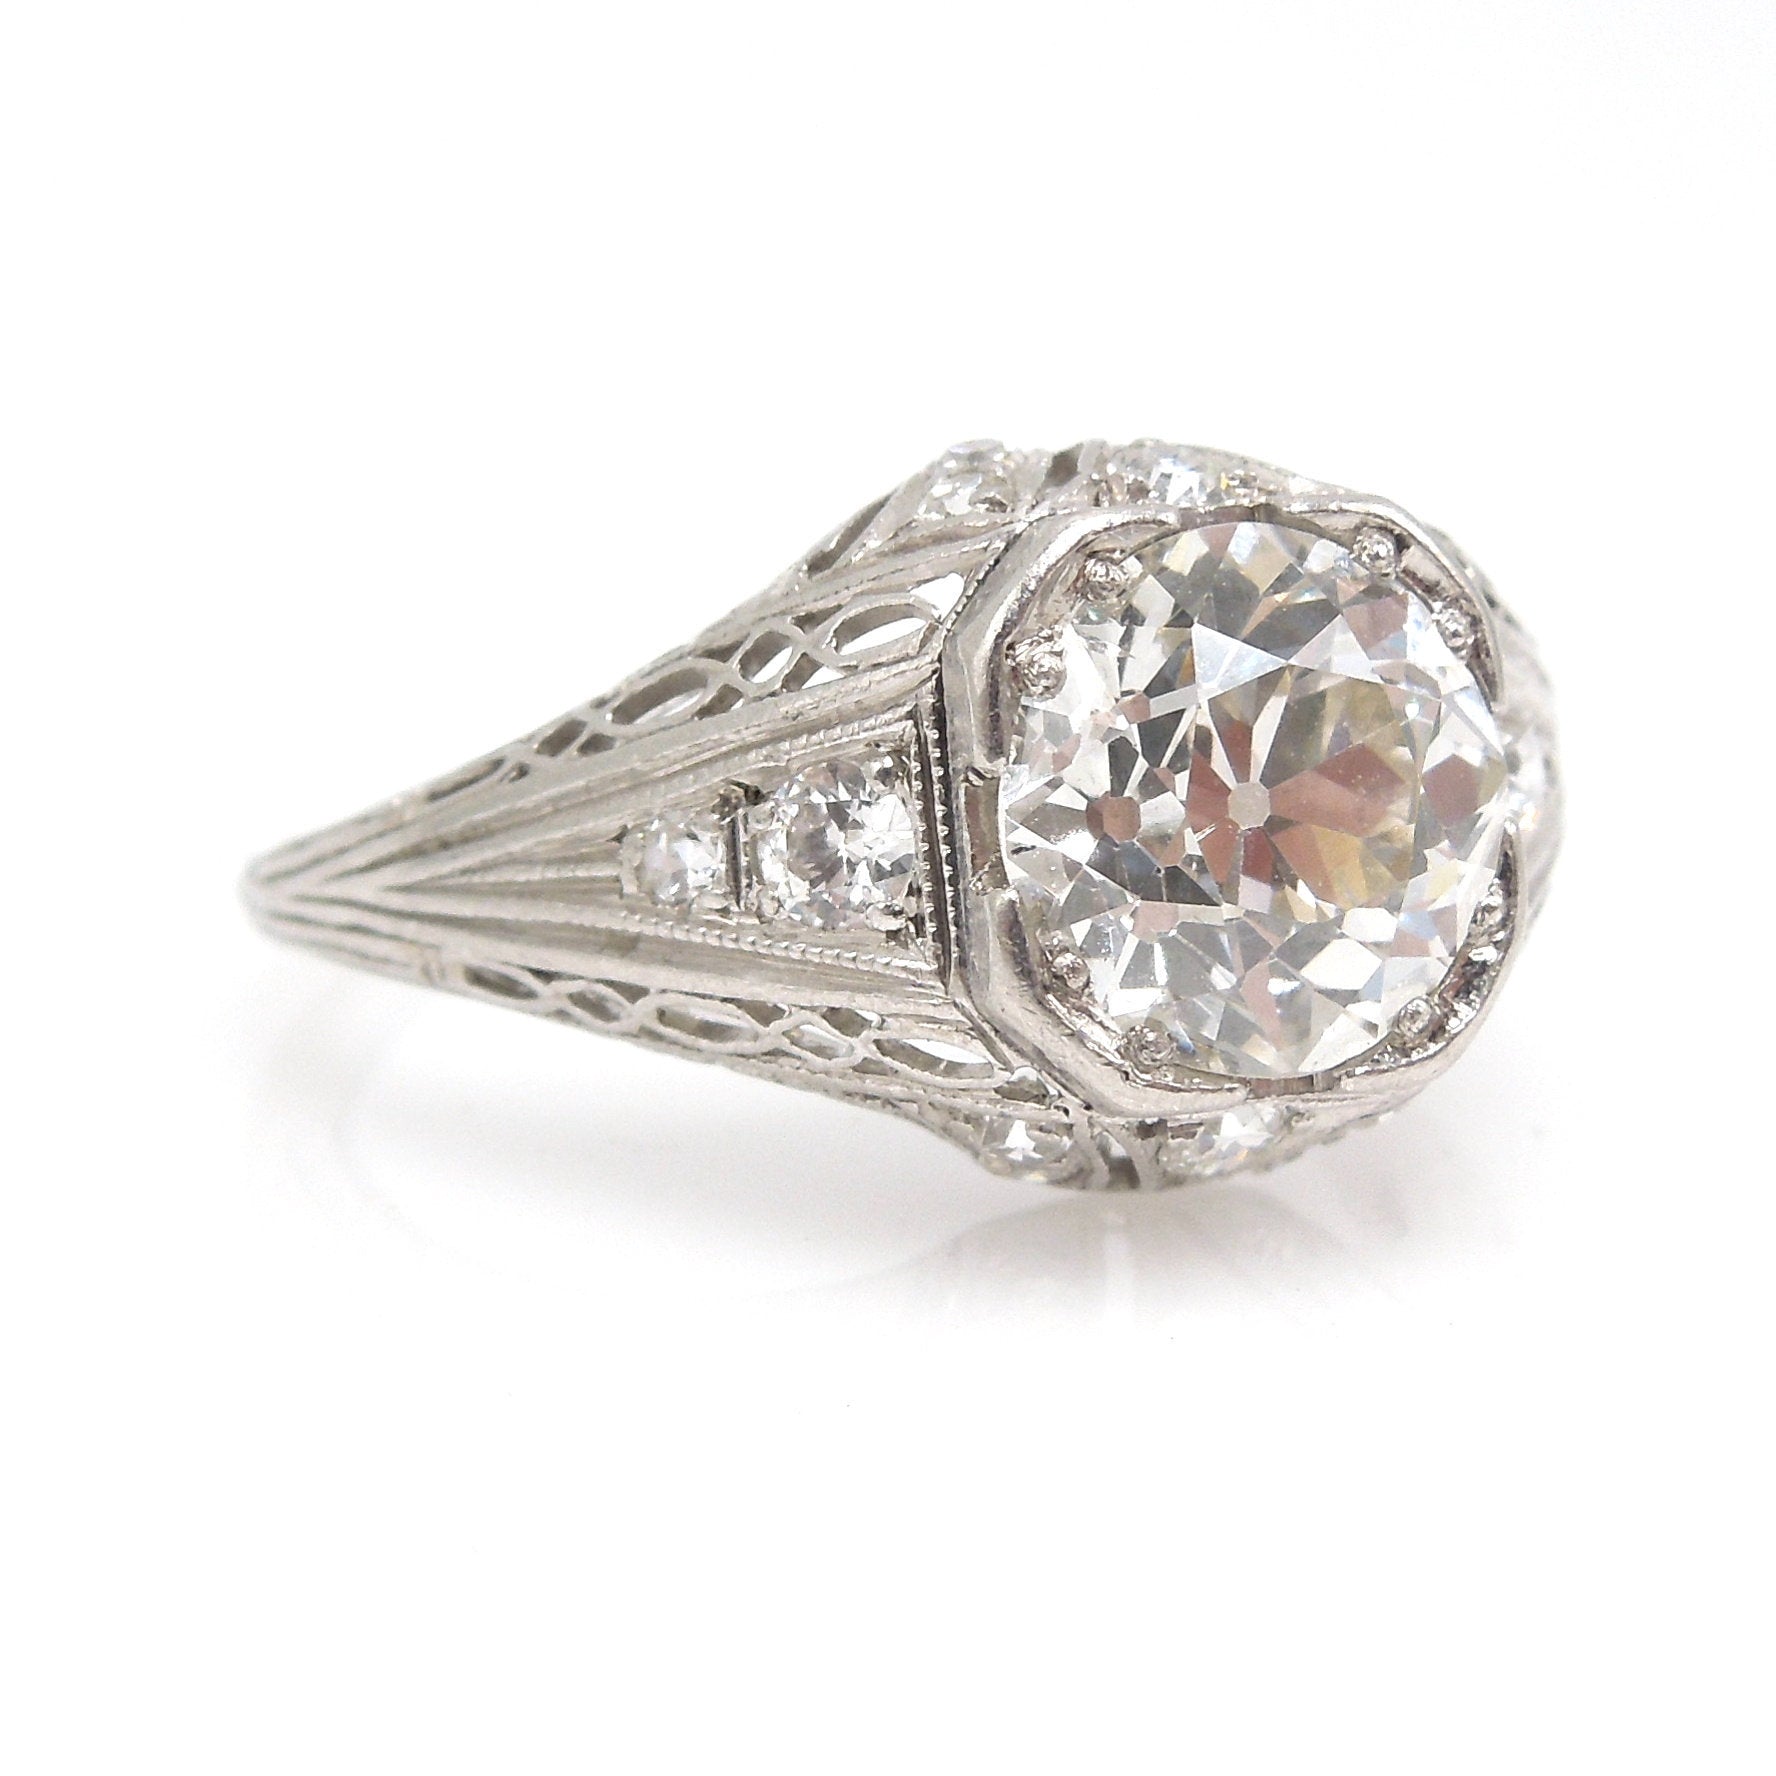 Original 1.47ct European Cut Diamond Art Deco Engagement Ring in Plati ...